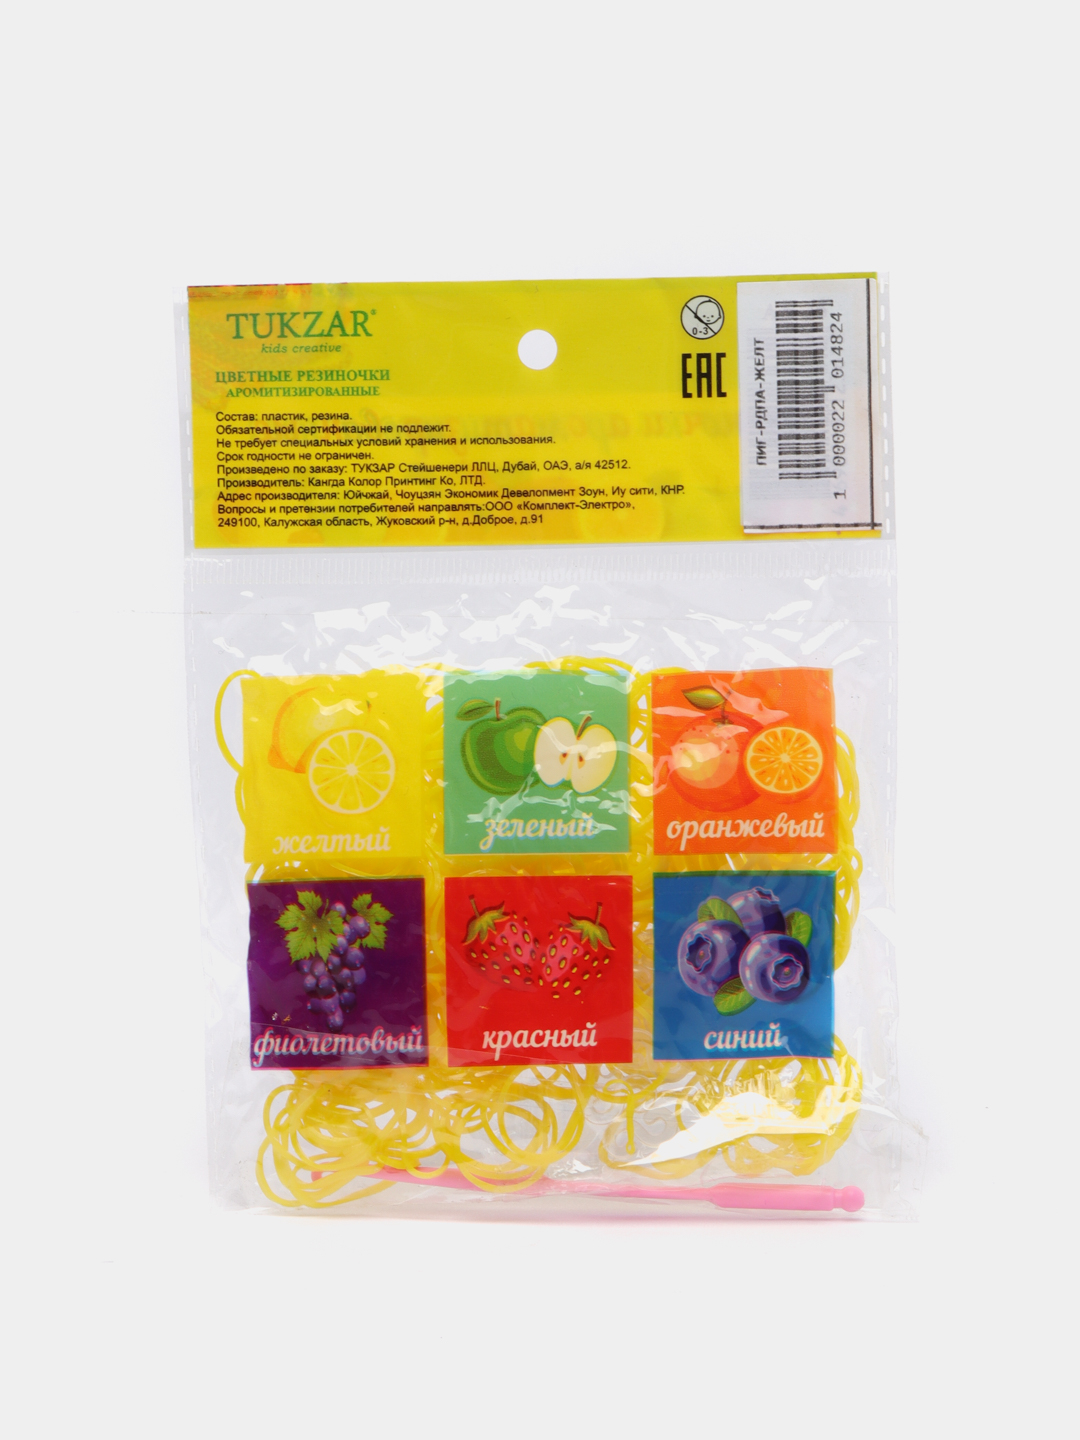 Набор резинок Color Kit для плетения браслетов Кошка 600 шт 5 видов деталей